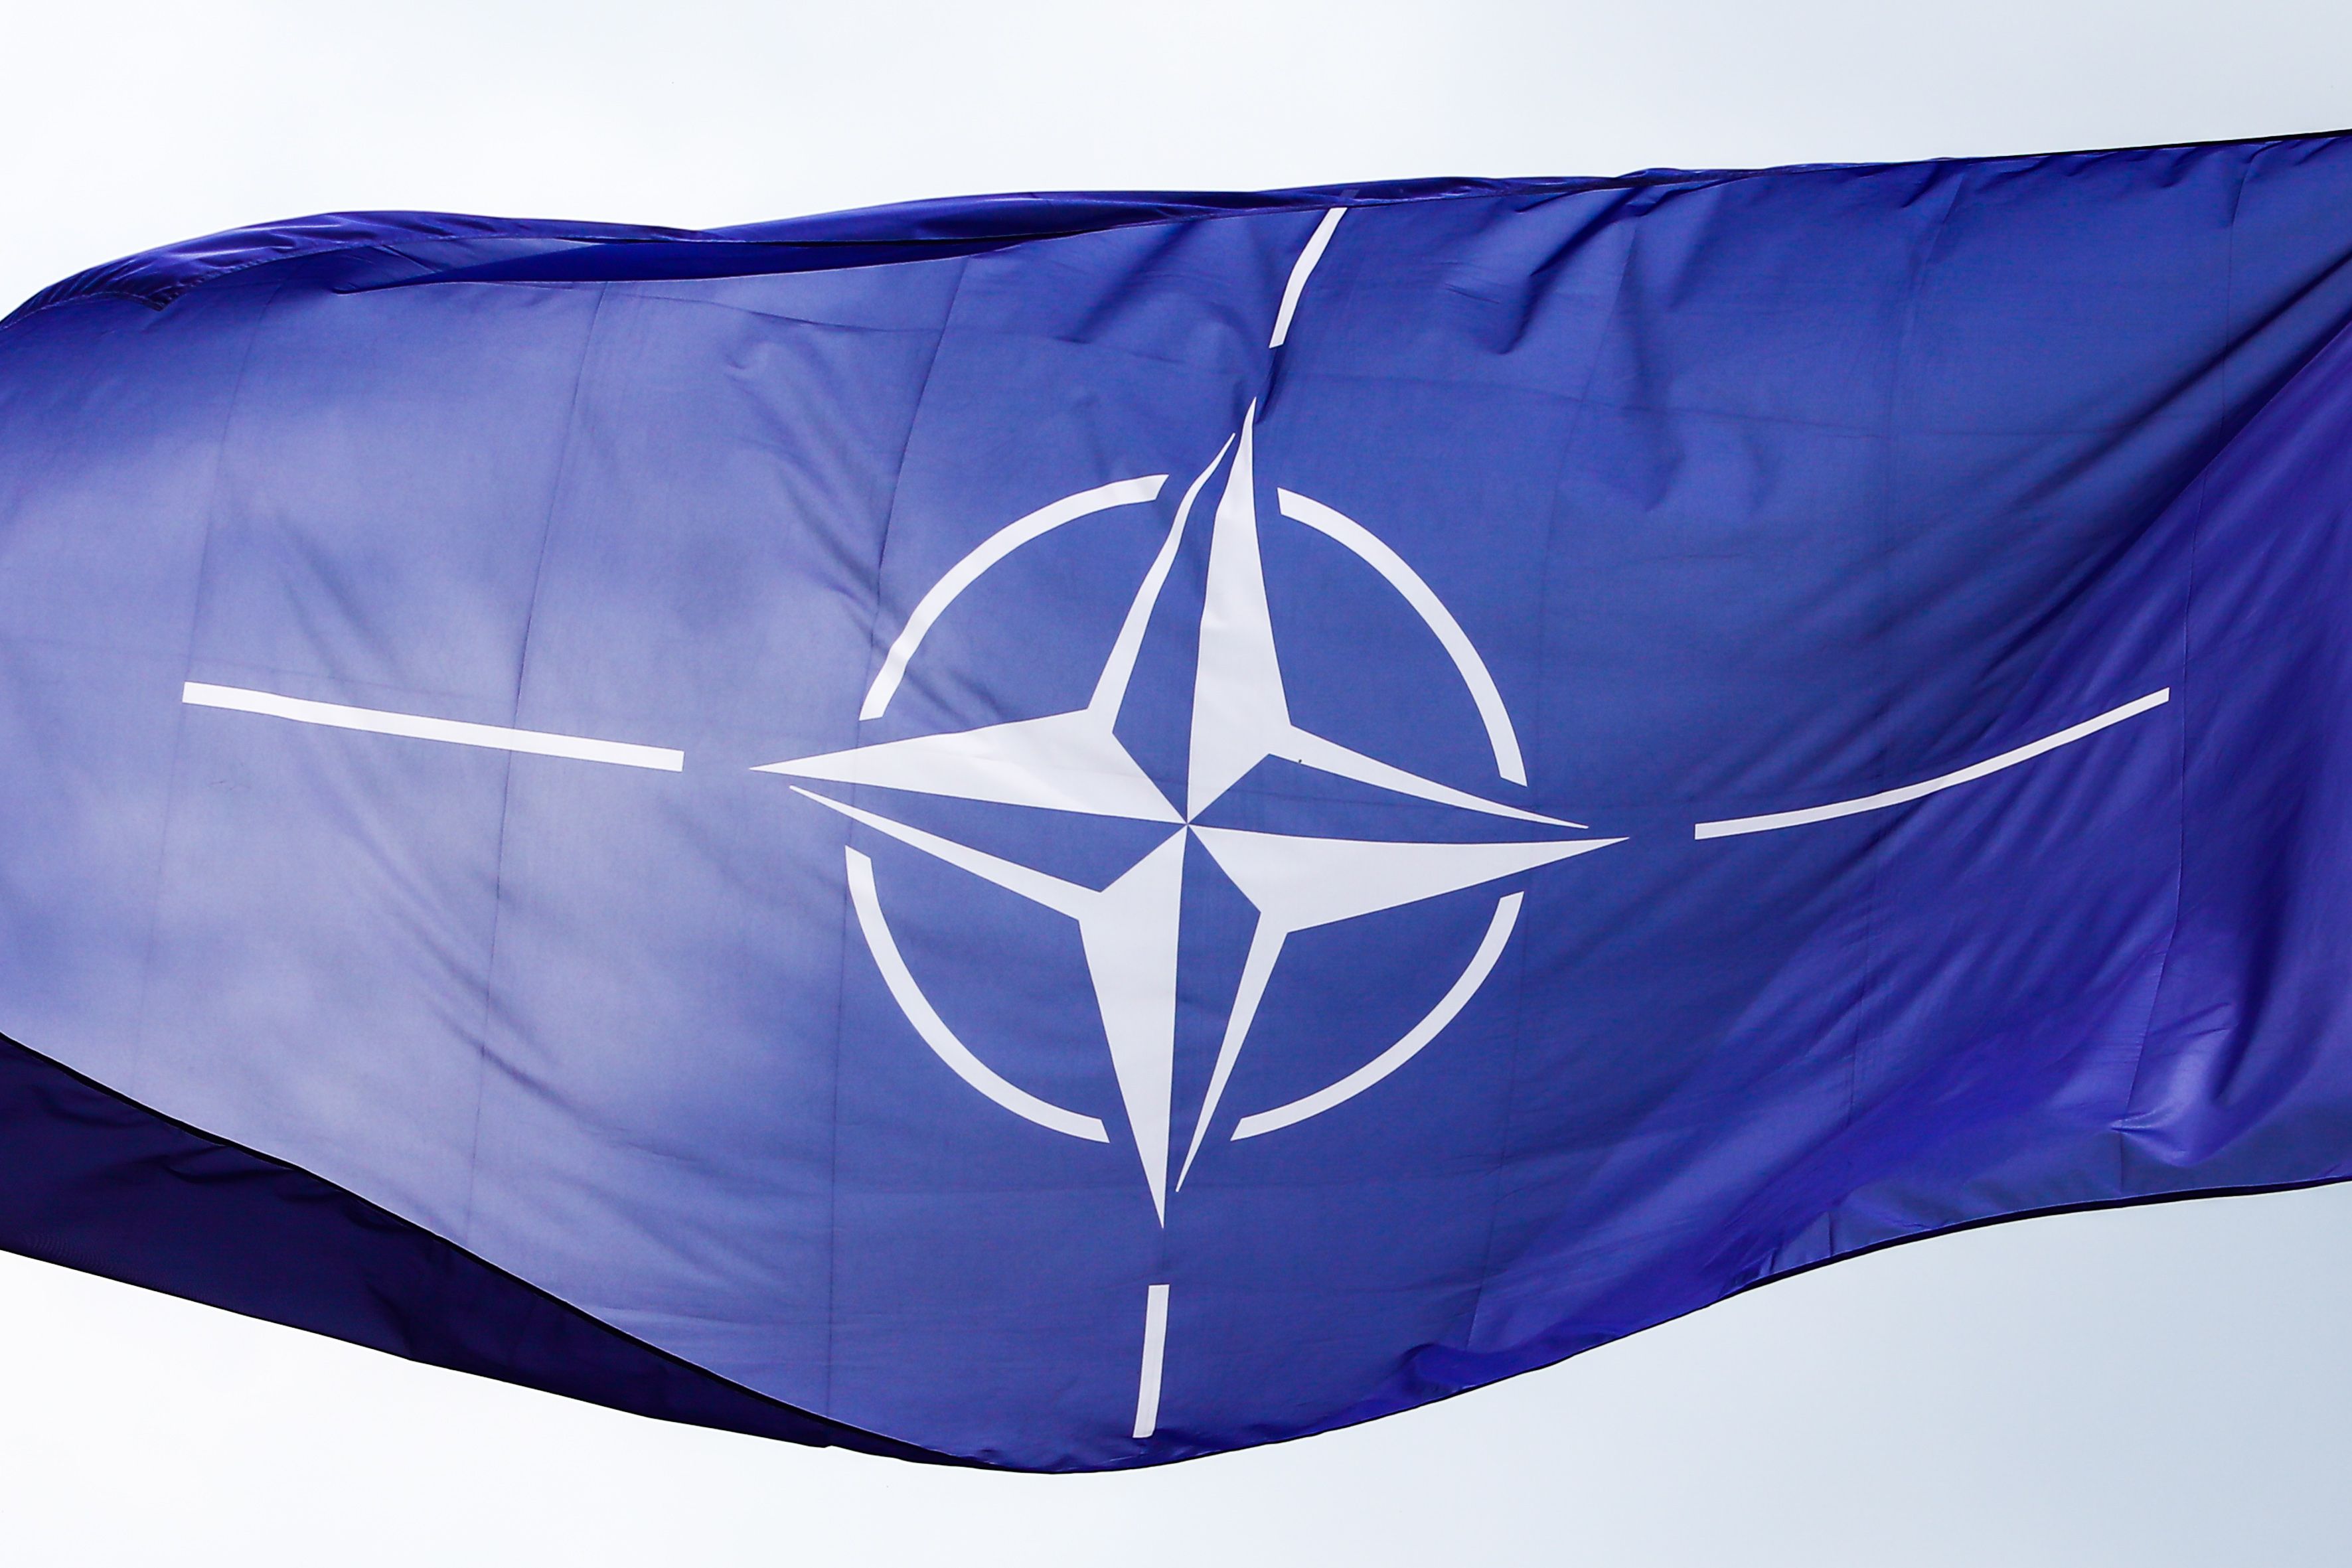 1 "Мы не согласны, что членство Украины в НАТО спровоцирует конфликт с Россией" Ученые просят алья - 24 Канал